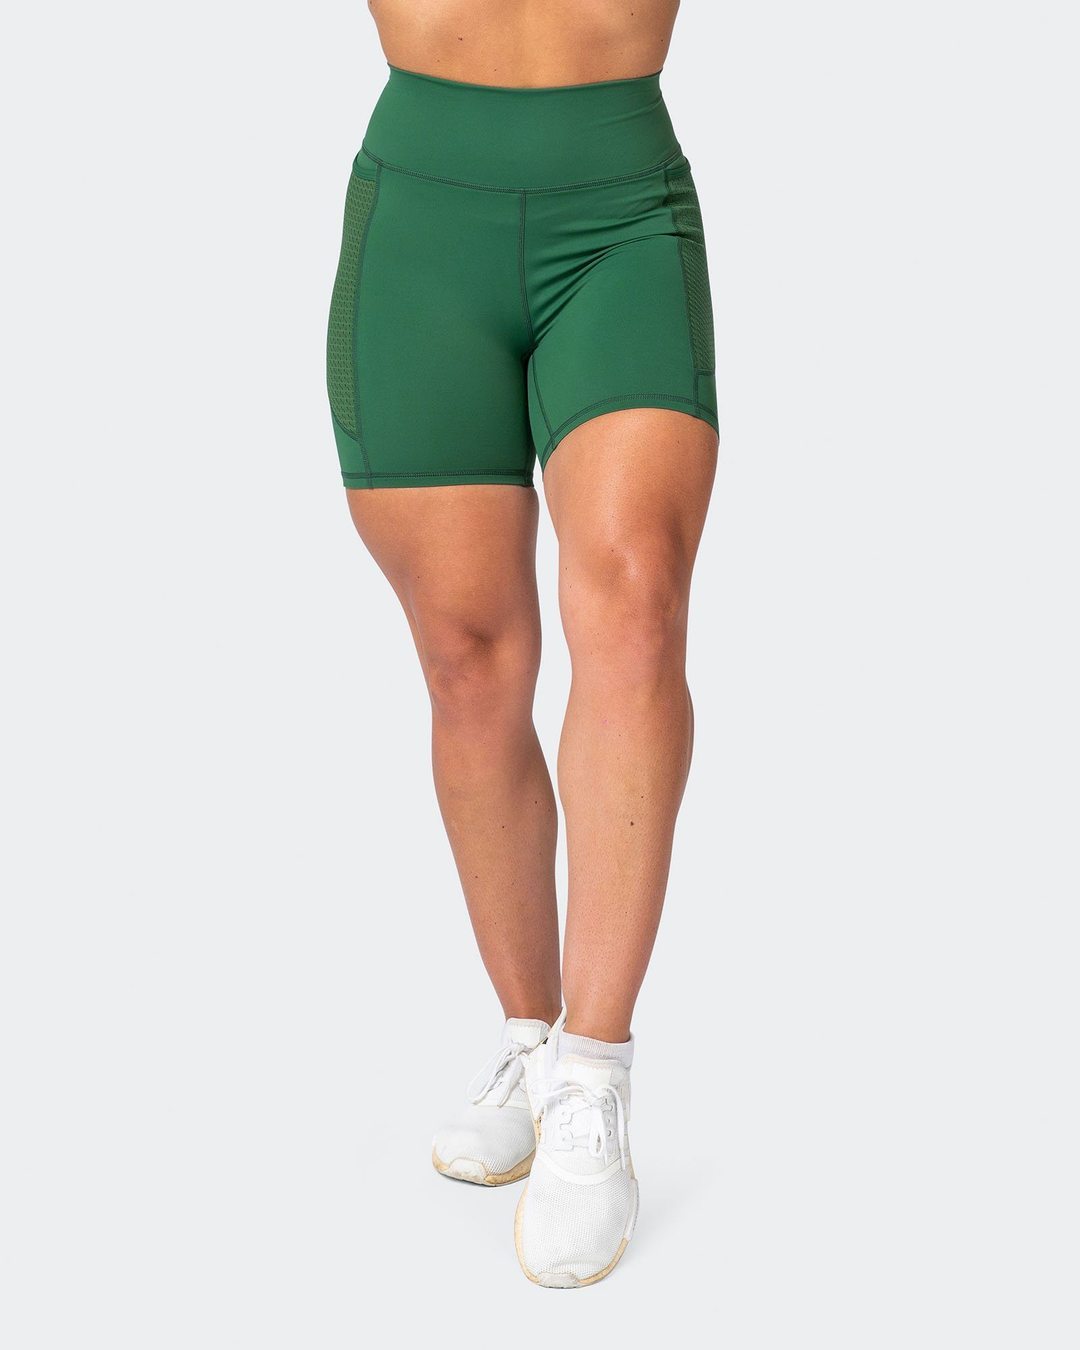 musclenation AMRAP Bike Shorts - Fir Green